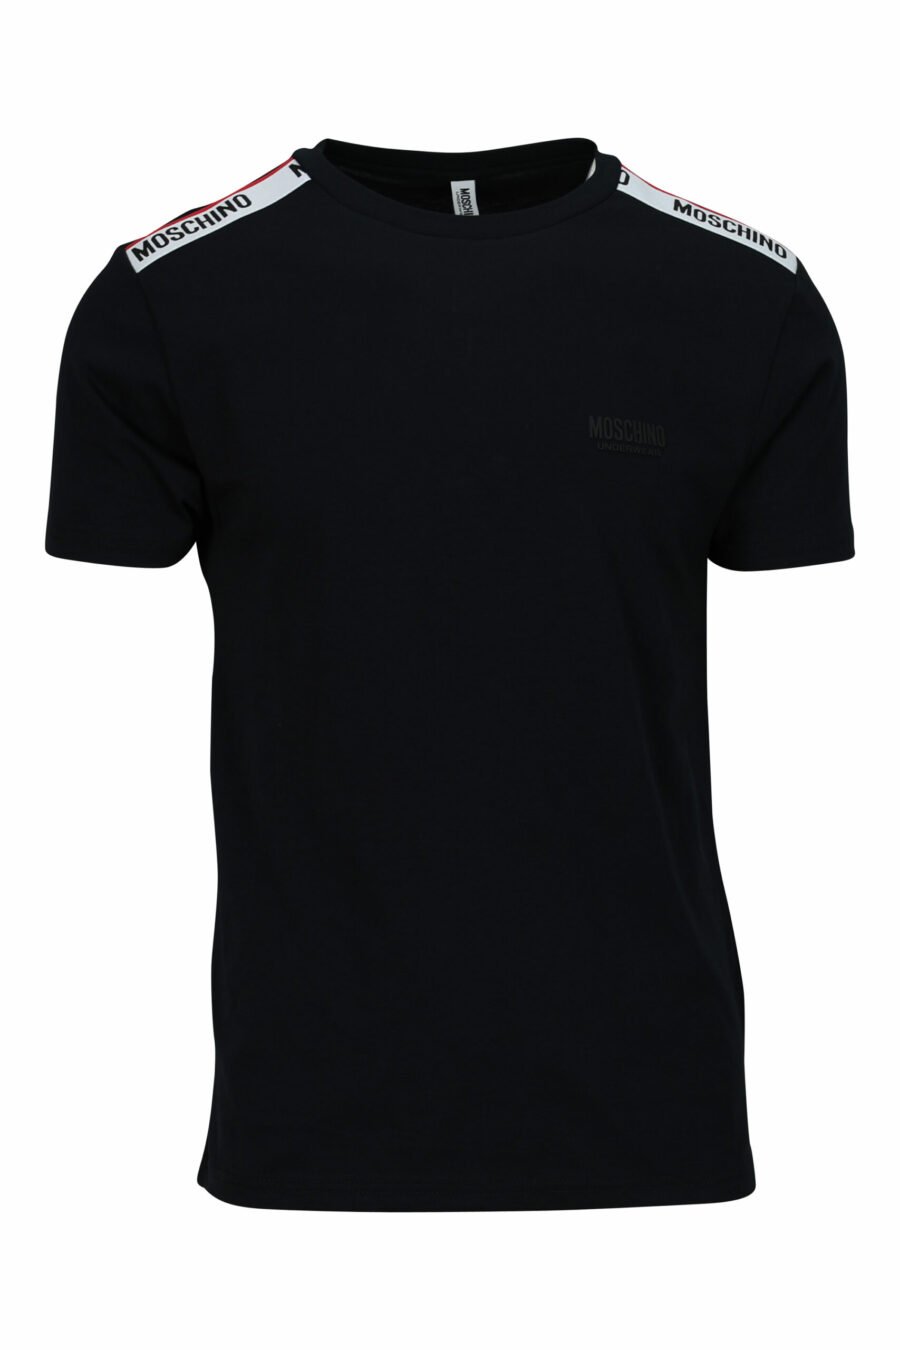 T-shirt noir avec logo blanc et ruban rouge sur les épaules - 667113604275 scaled